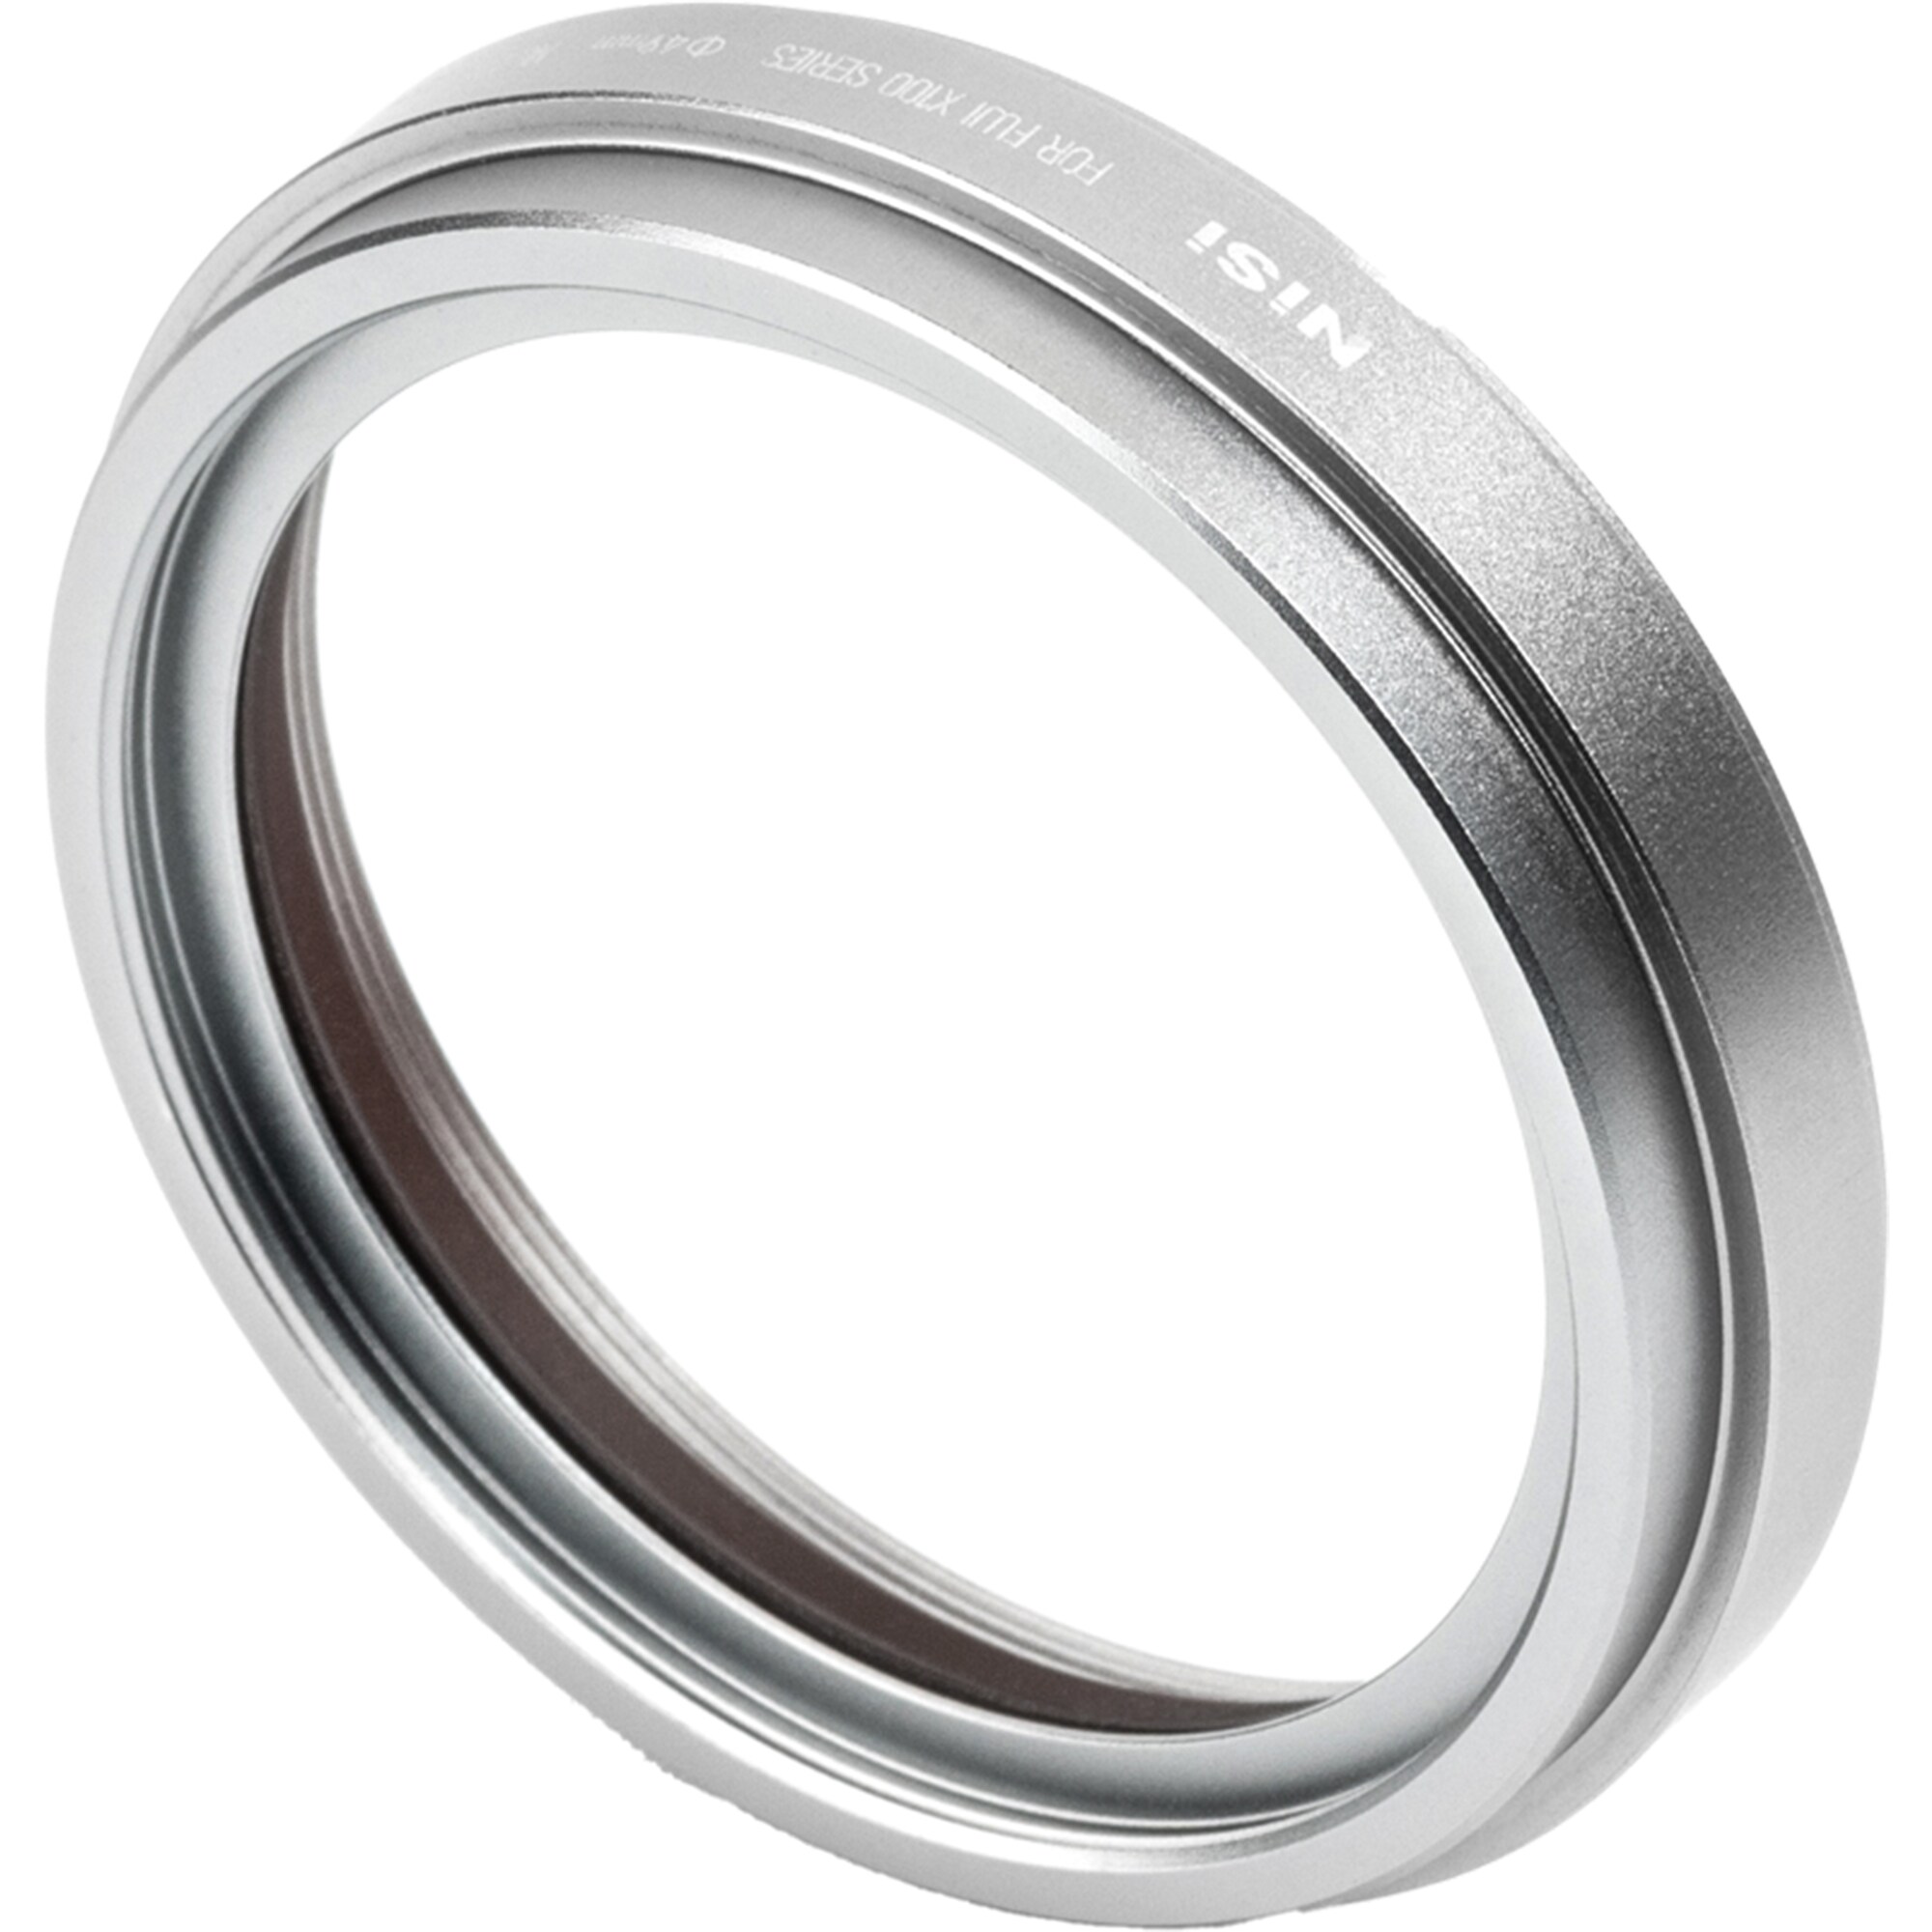 NiSi Motljusskydd, UV-Filter & lock för Fujifilm X100 Silver